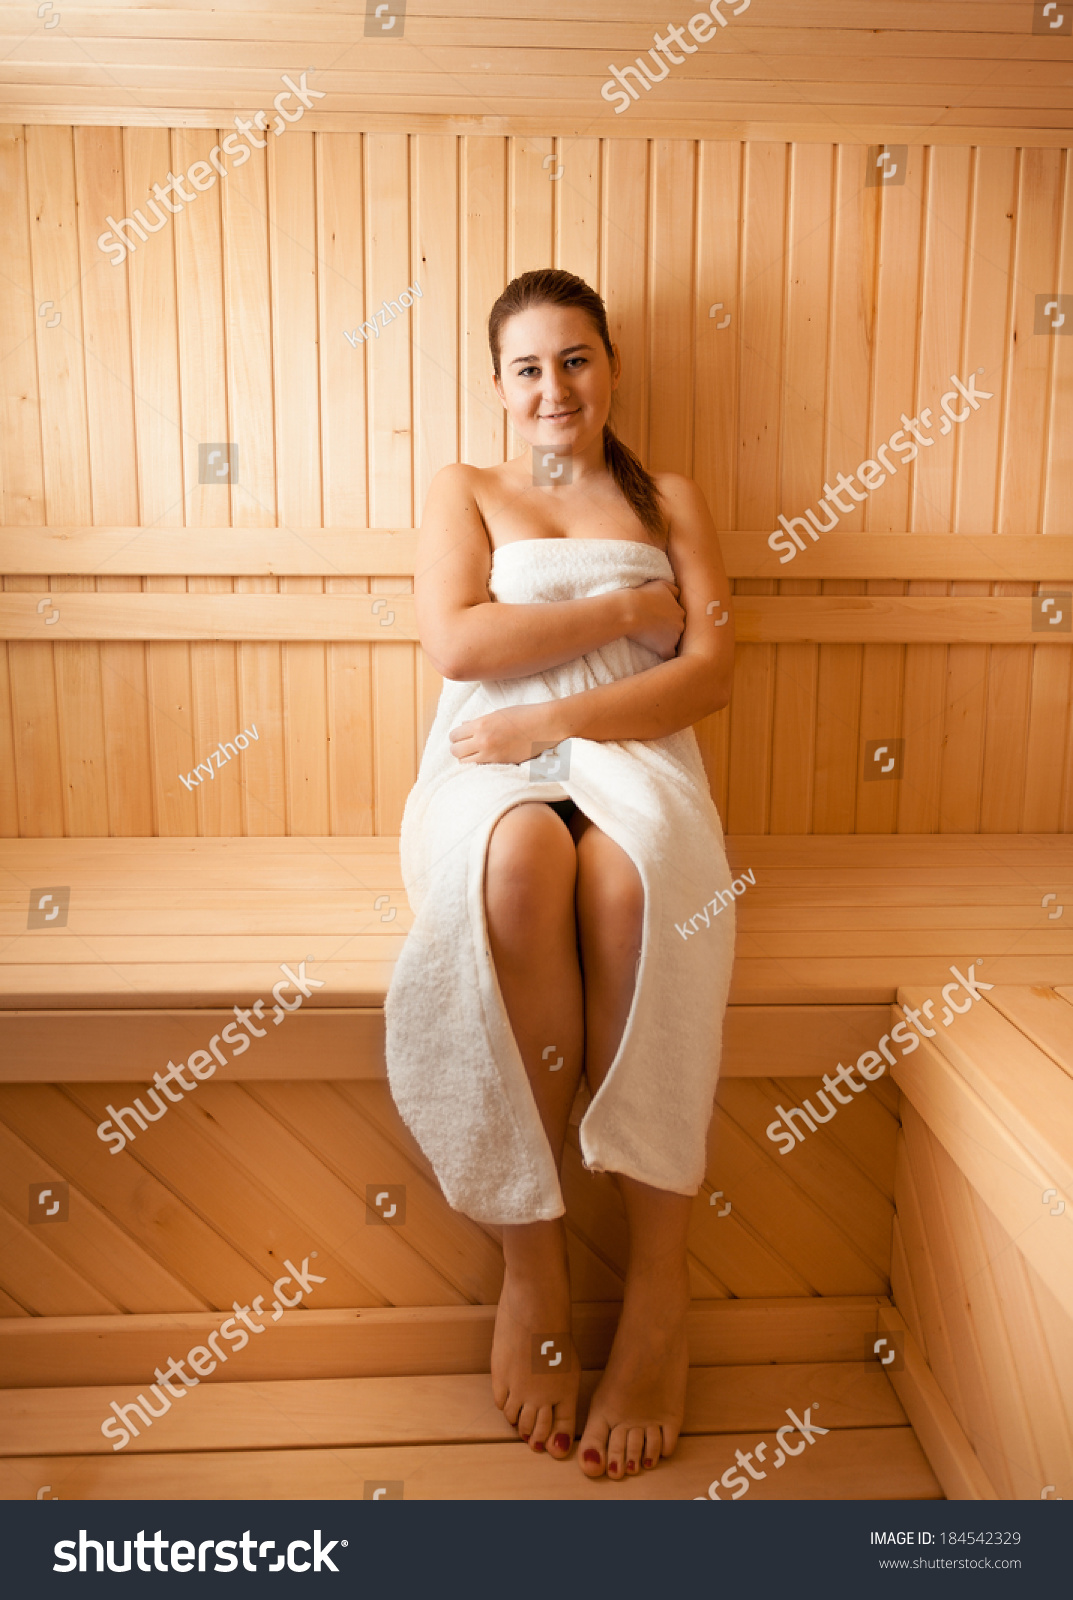 подсматриваем за голыми женщинами в банях фото 53